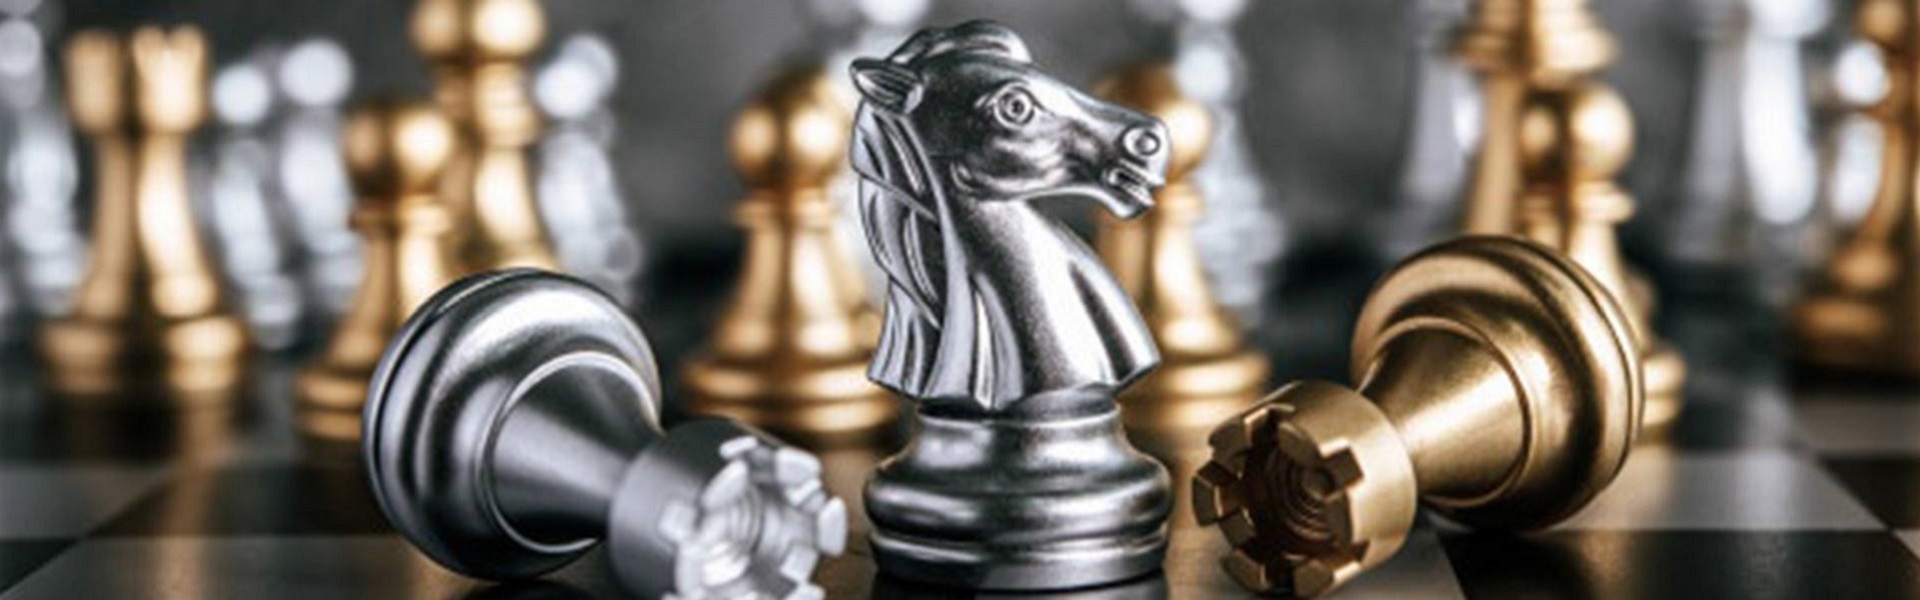 Rent a car Novi Beograd |  Chess lessons Dubai & New York